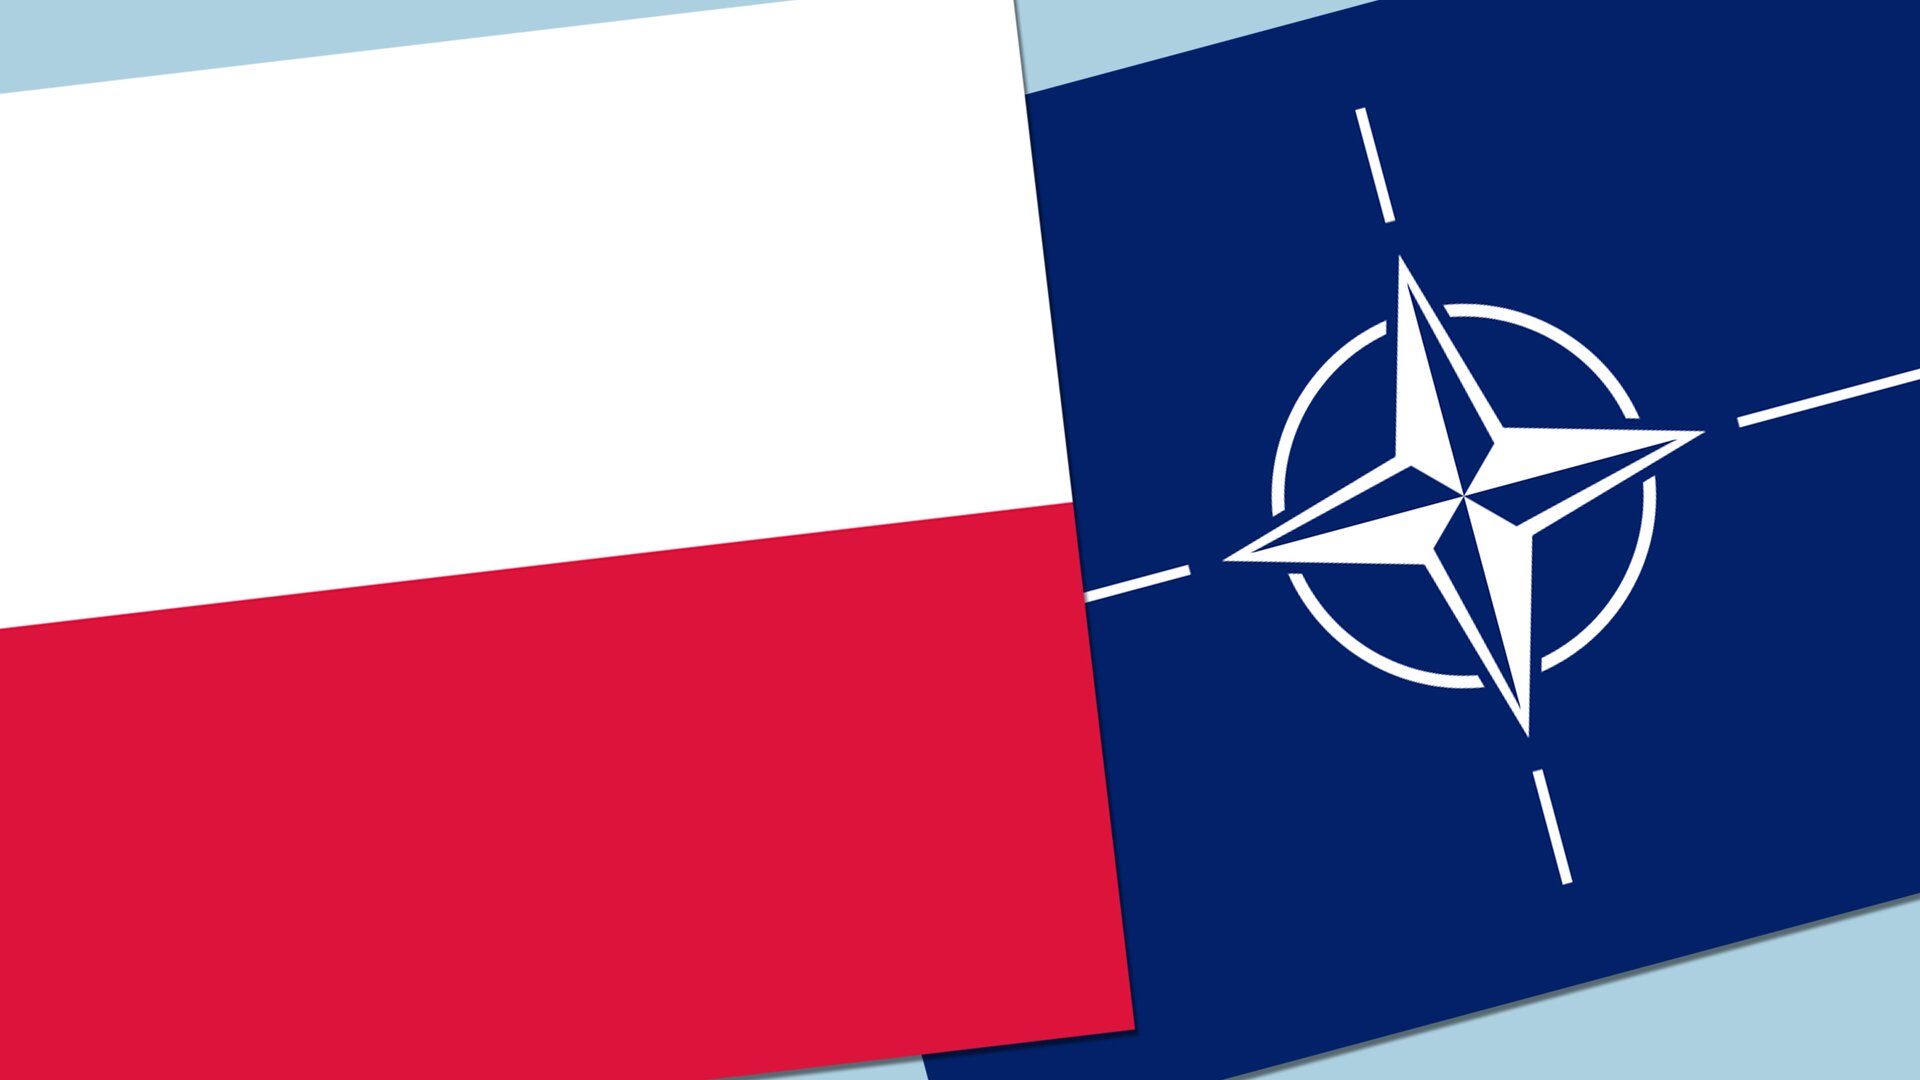 Ilustracja.
Ilustracja przedstawia Polskę w NATO. Flaga RP i NATO. Flaga RP w barwach narodowych, ułożone w dwóch poziomych, równoległych pasach tej samej szerokości, z których górny jest koloru białego, a dolny koloru czerwonego. Flaga NATO jest w odcieniu błękitnego. Symbolizuje Ocean Atlantycki. Ma biały pierścień symbolizujący jedność oraz na środku różę kierunkową oznaczającą bezpieczeństwo.